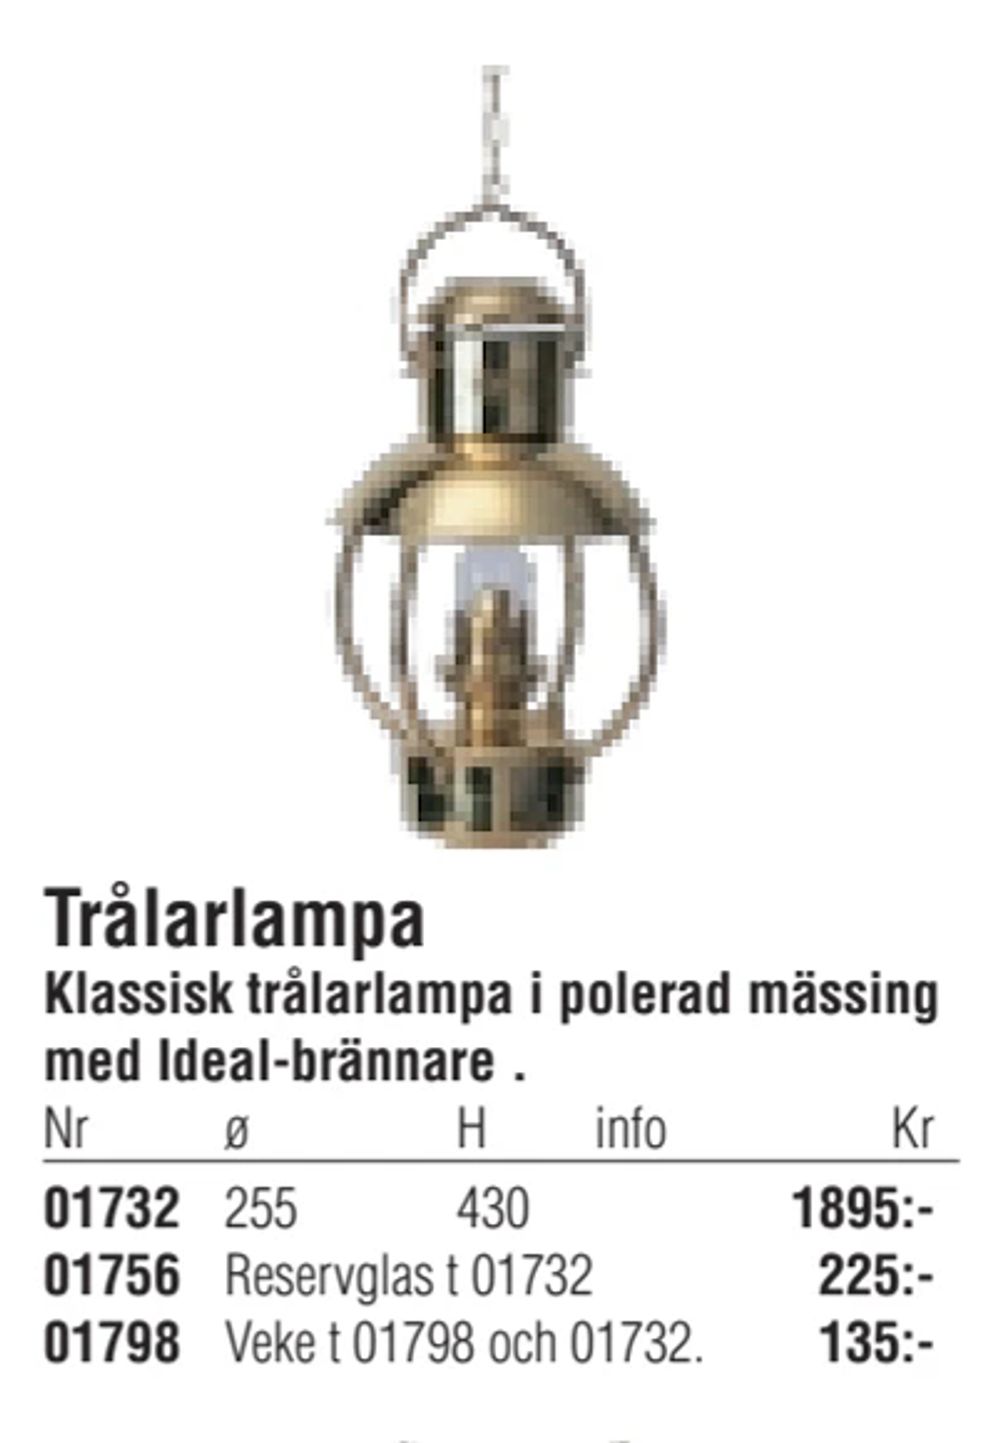 Erbjudanden på Trålarlampa från Erlandsons Brygga för 1 895 kr